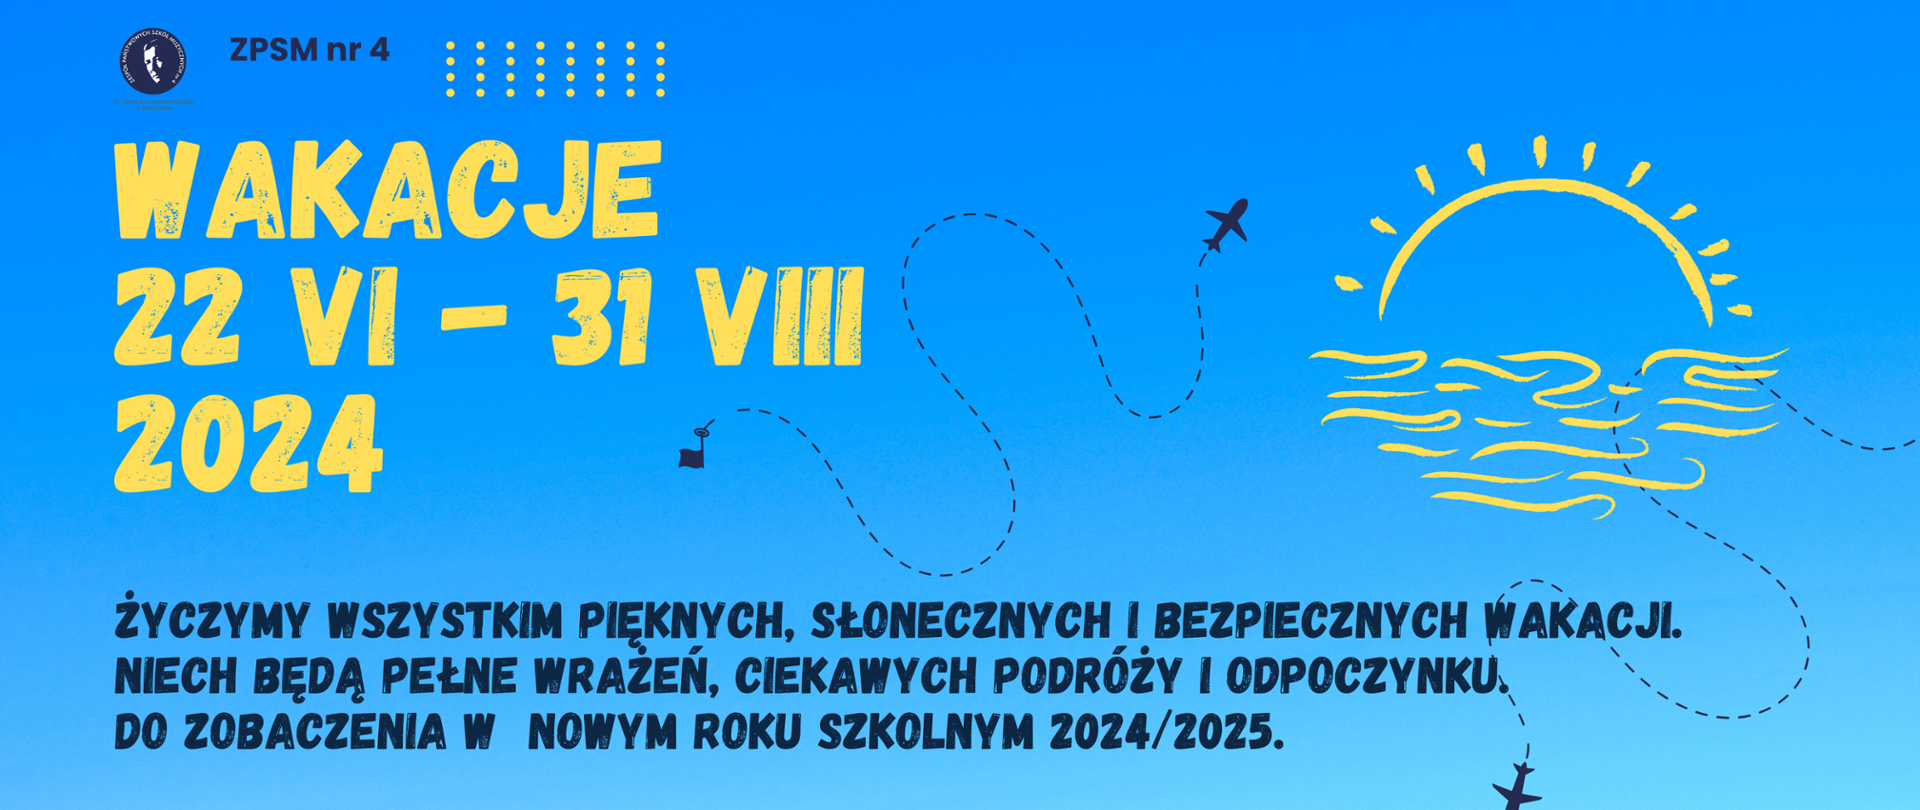 Baner ogłaszający wakacje 2024 w dniach 22 VI - 31 VIII 2024 z napisem: Życzymy wszystkim pięknych, słonecznych i bezpiecznych wakacji. Niech będą pełne wrażeń, ciekawych podróży i odpoczynku. Do zobaczenia w nowym roku szkolnym 2024/2025. Niebieskie tło, grafika z samolotami na niebie, słońce za chmurą, czcionka żółta i granatowa i logo szkoły.Baner ogłaszający wakacje 2024 w dniach 22 VI - 31 VIII 2024 z napisem: Życzymy wszystkim pięknych, słonecznych i bezpiecznych wakacji. Niech będą pełne wrażeń, ciekawych podróży i odpoczynku. Do zobaczenia w nowym roku szkolnym 2024/2025. 